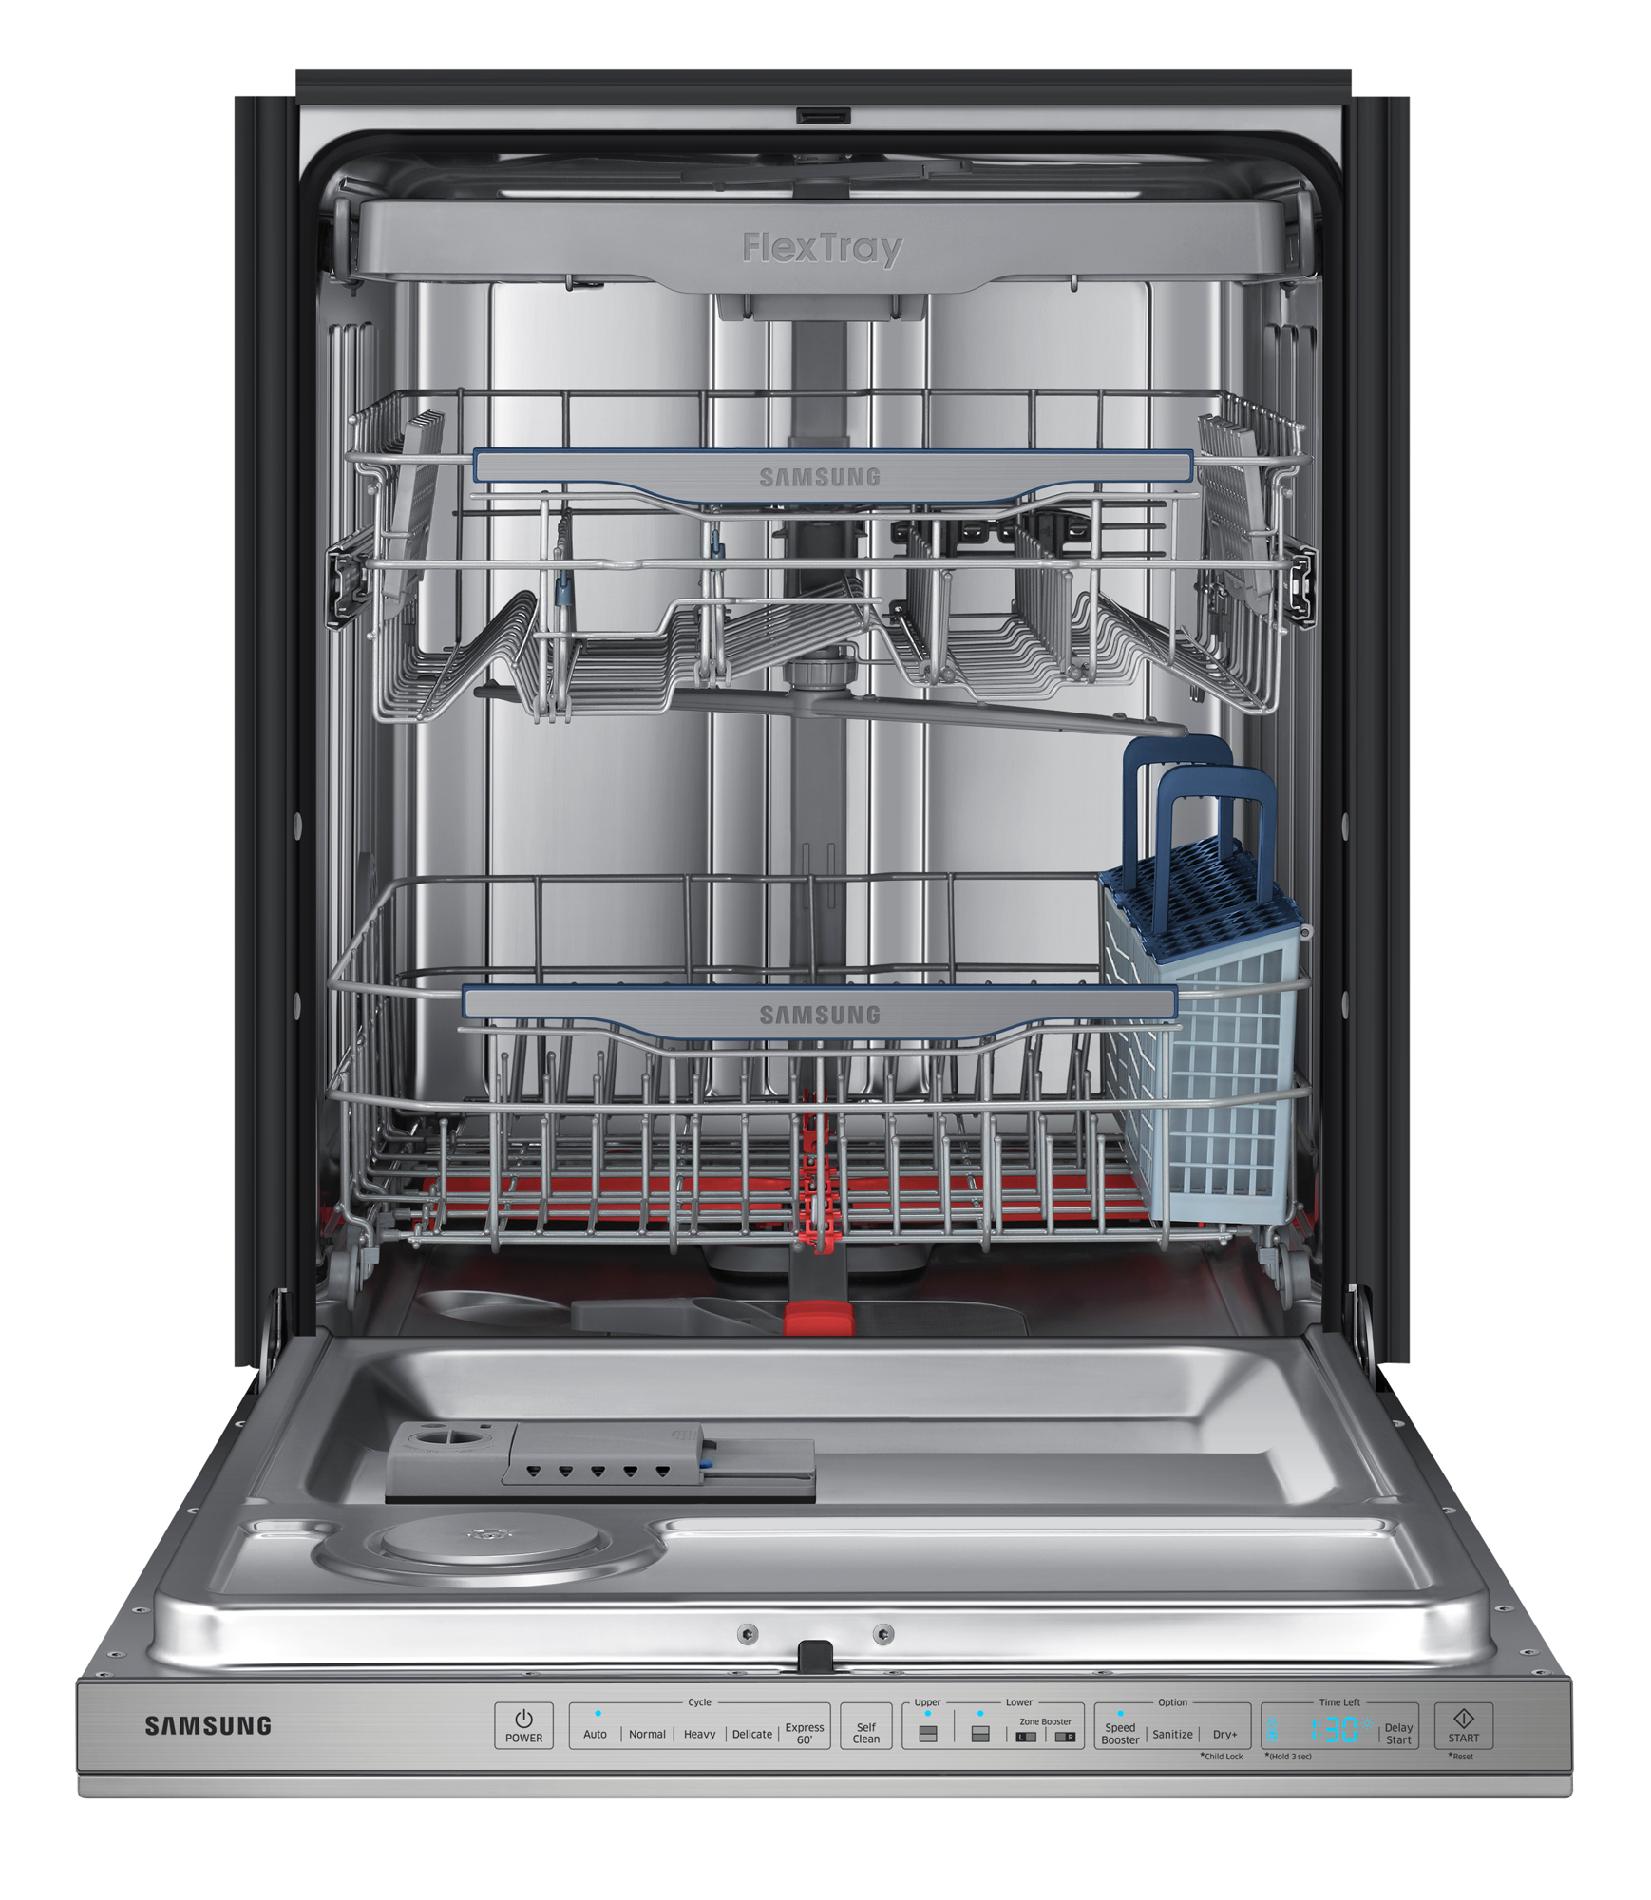 sears samsung dishwasher